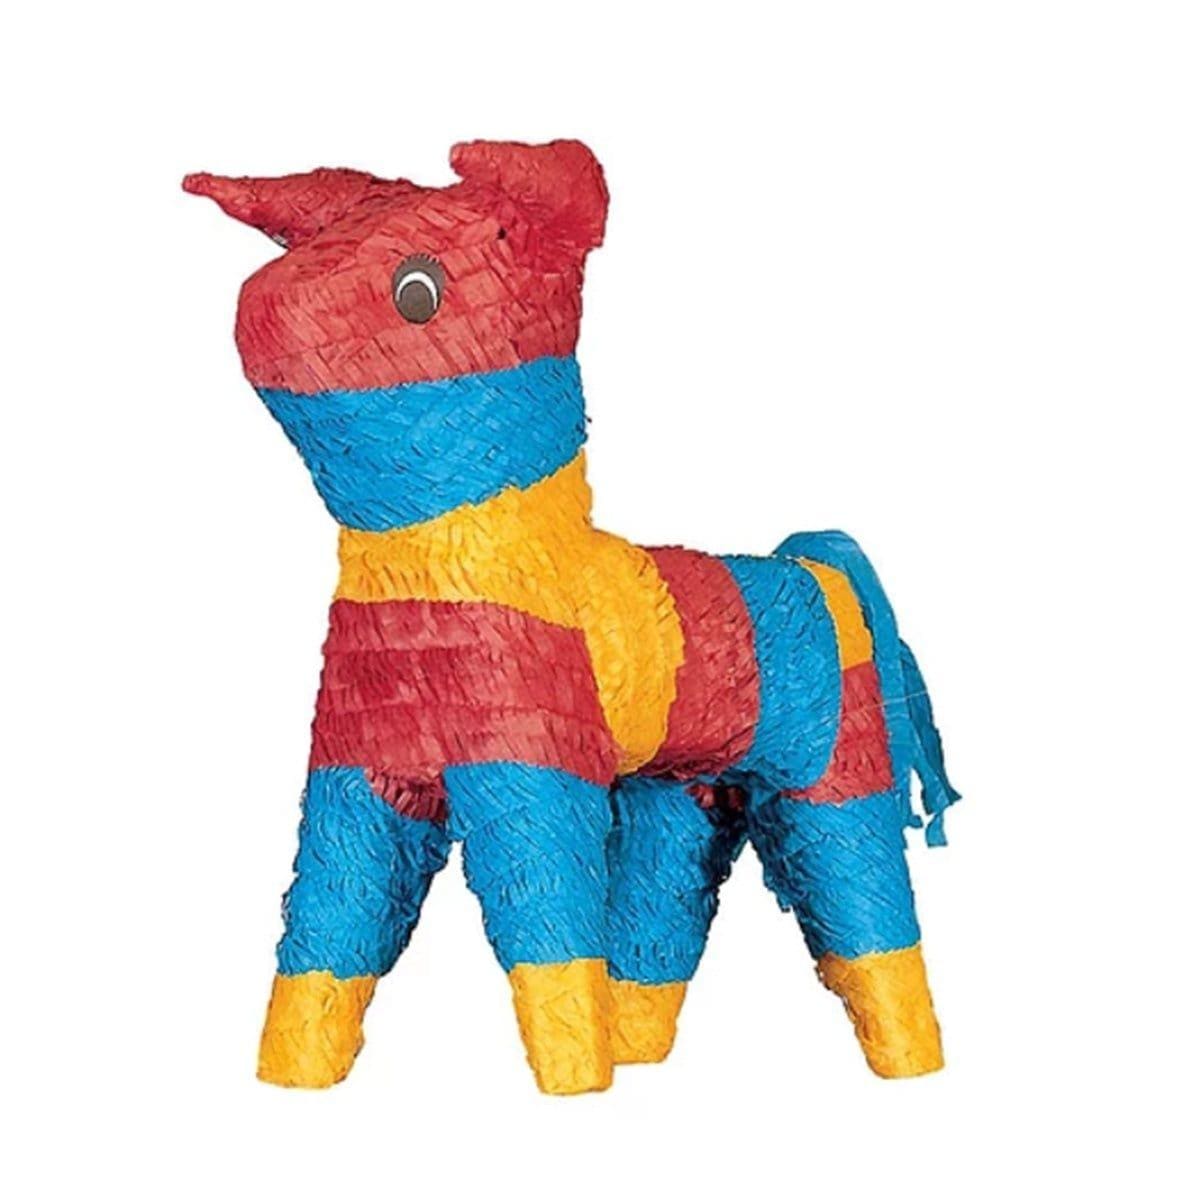 Buy Pinatas Bull Piñata sold at Party Expert